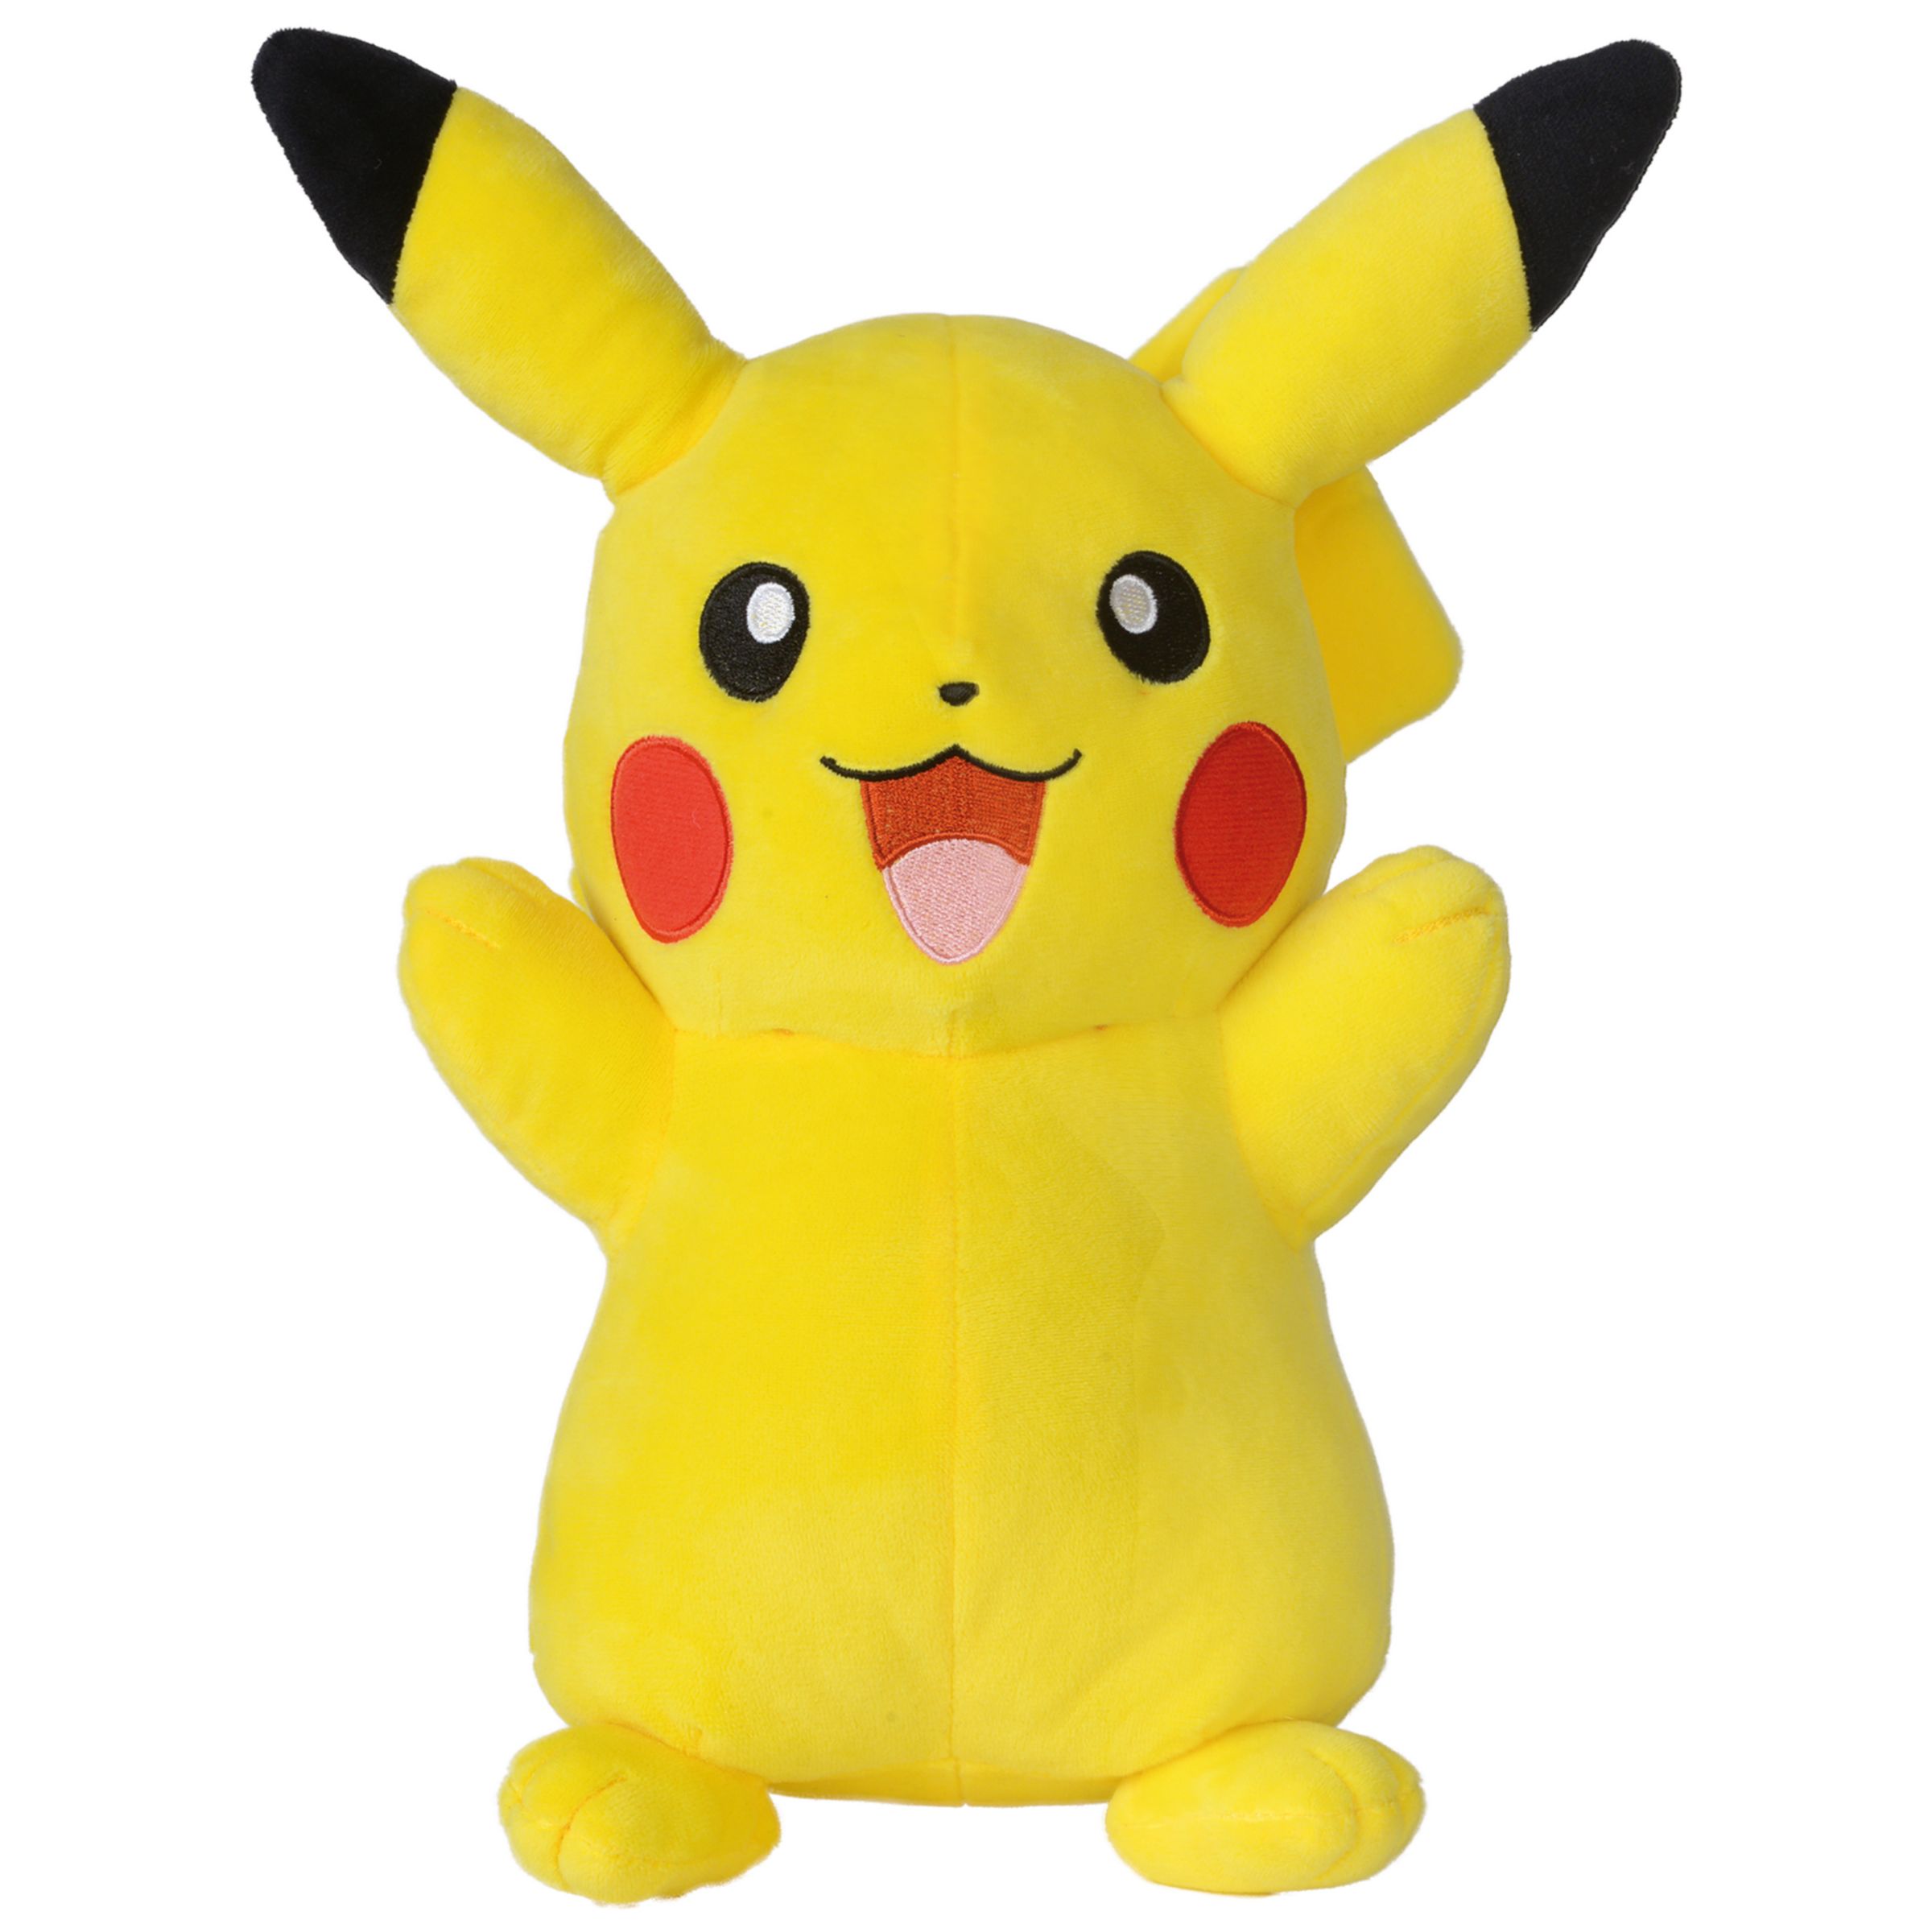 pikachu stuff toy